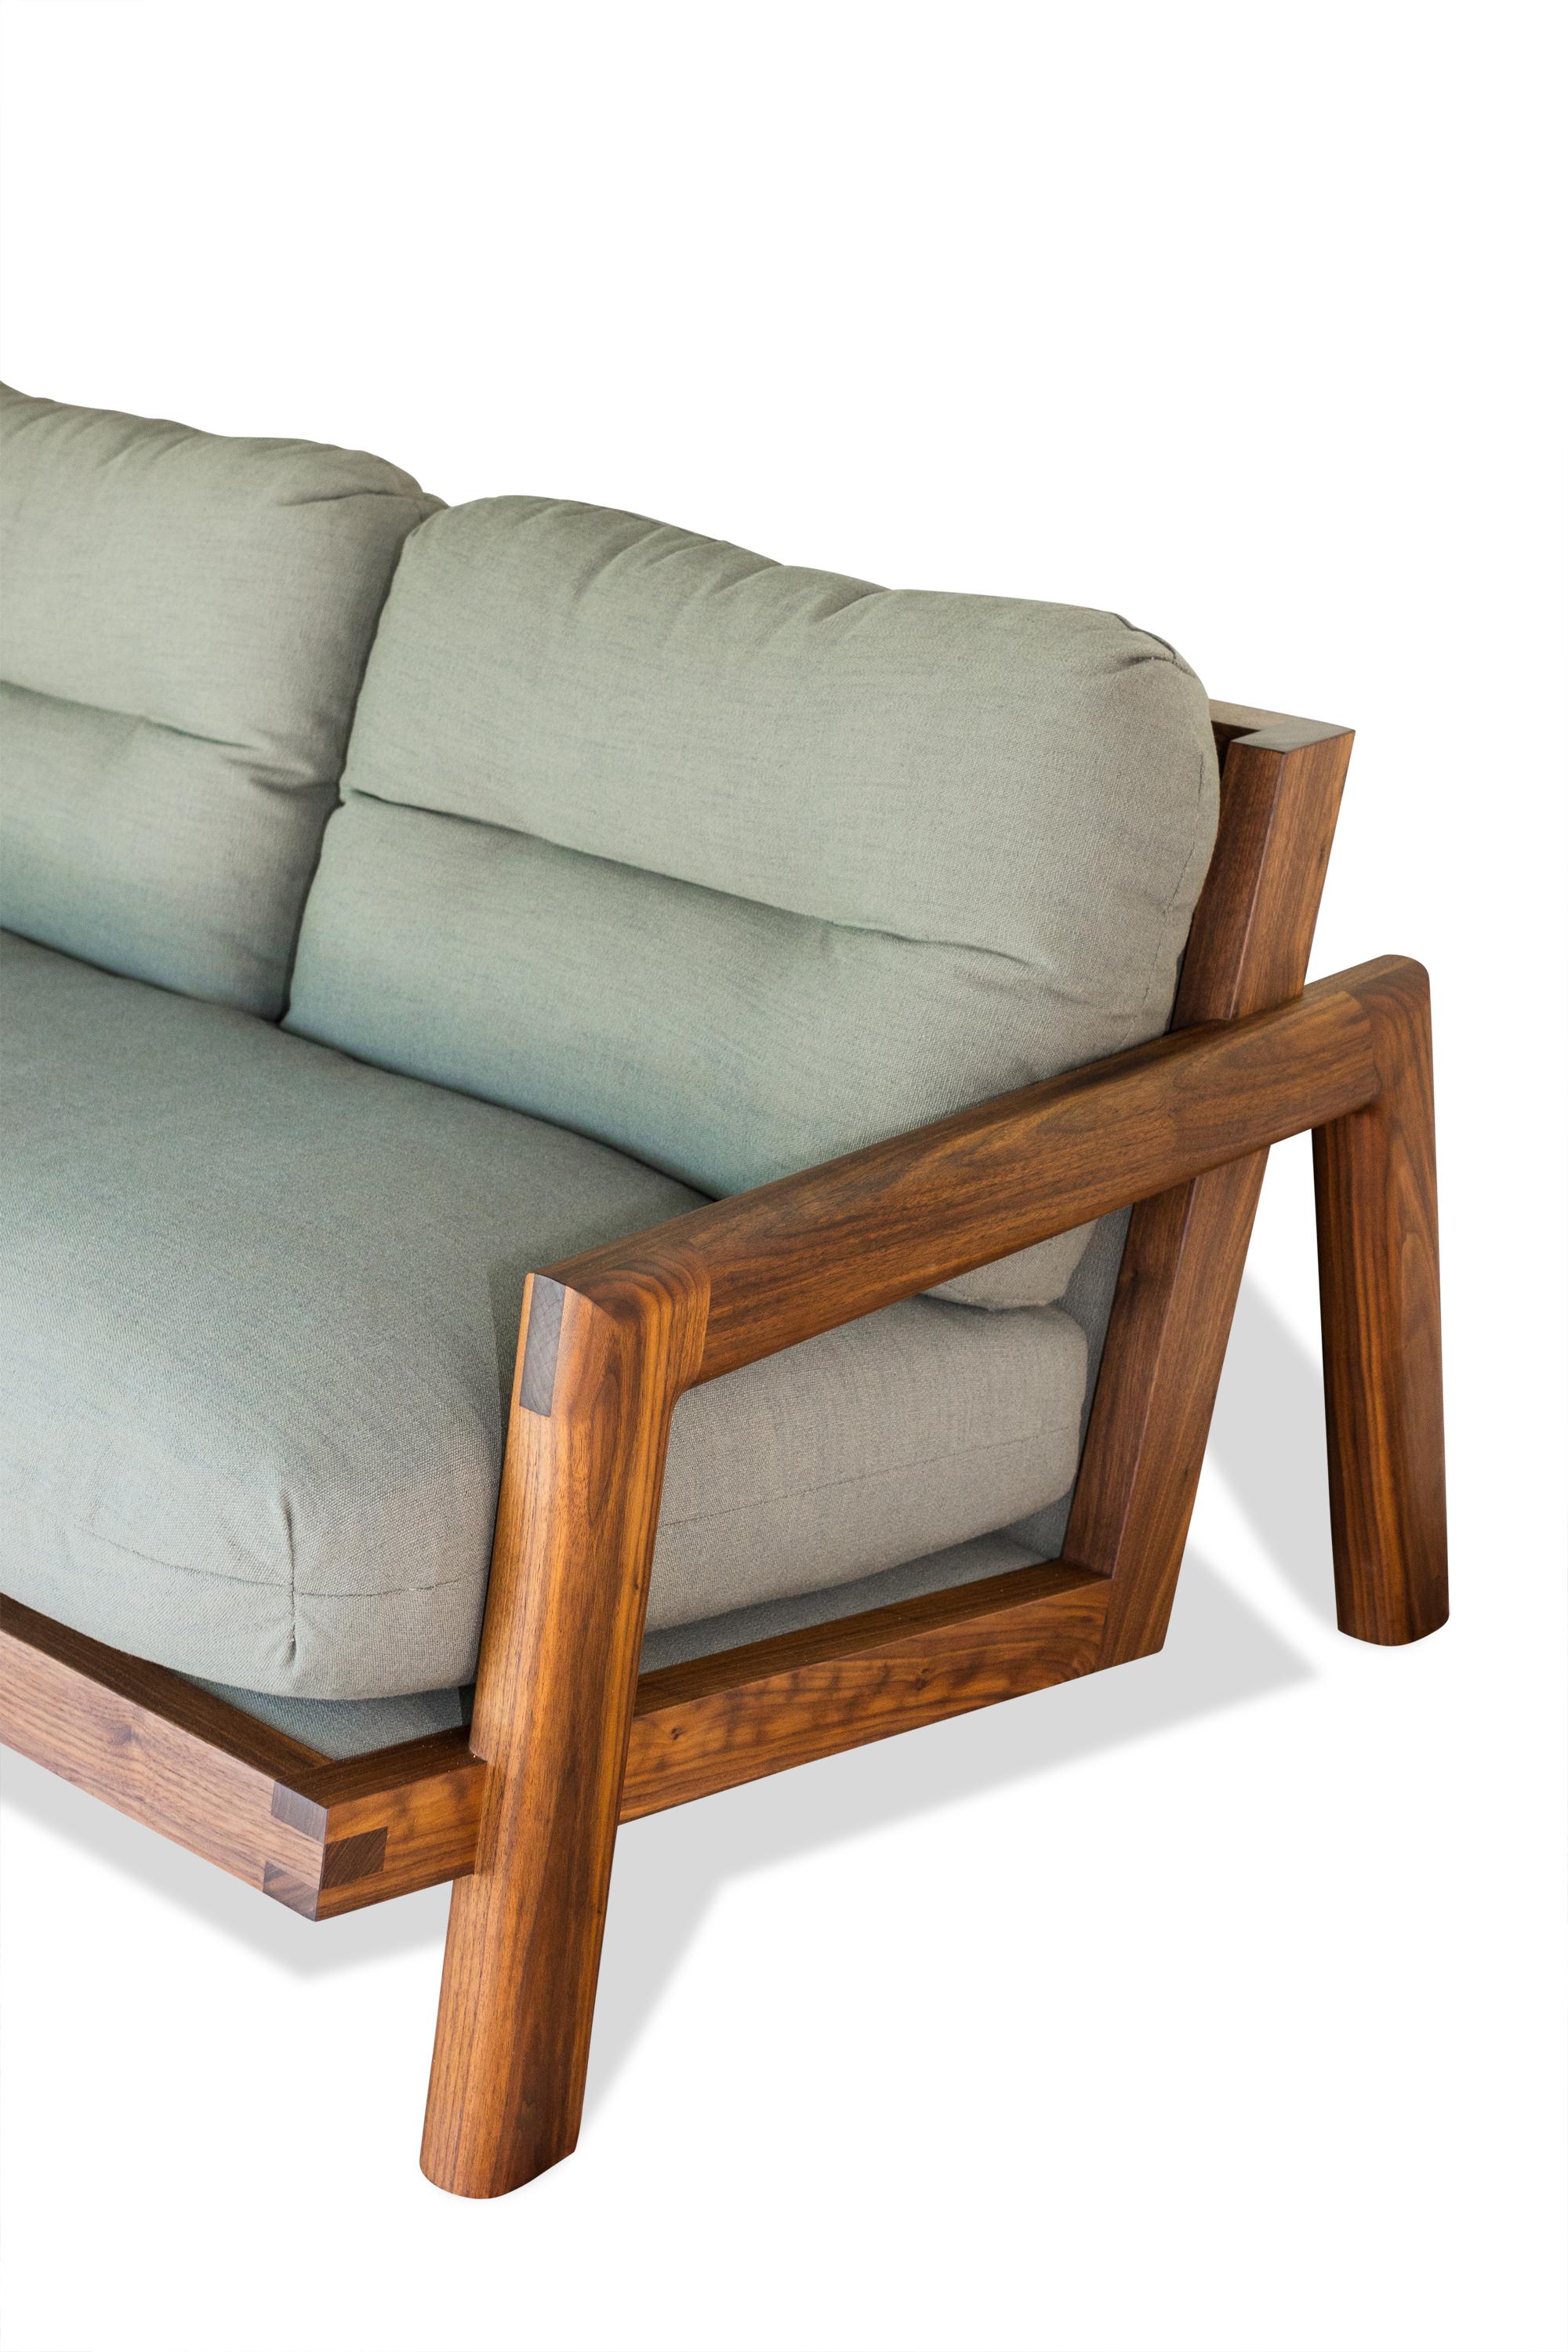 S'inspirant de la juxtaposition de formes organiques et géométriques, le canapé TAMBU est né de la volonté de créer une assise à la fois super confortable et élégante. Nous pensons que l'intérêt et la beauté inhérents à ce canapé en feront un